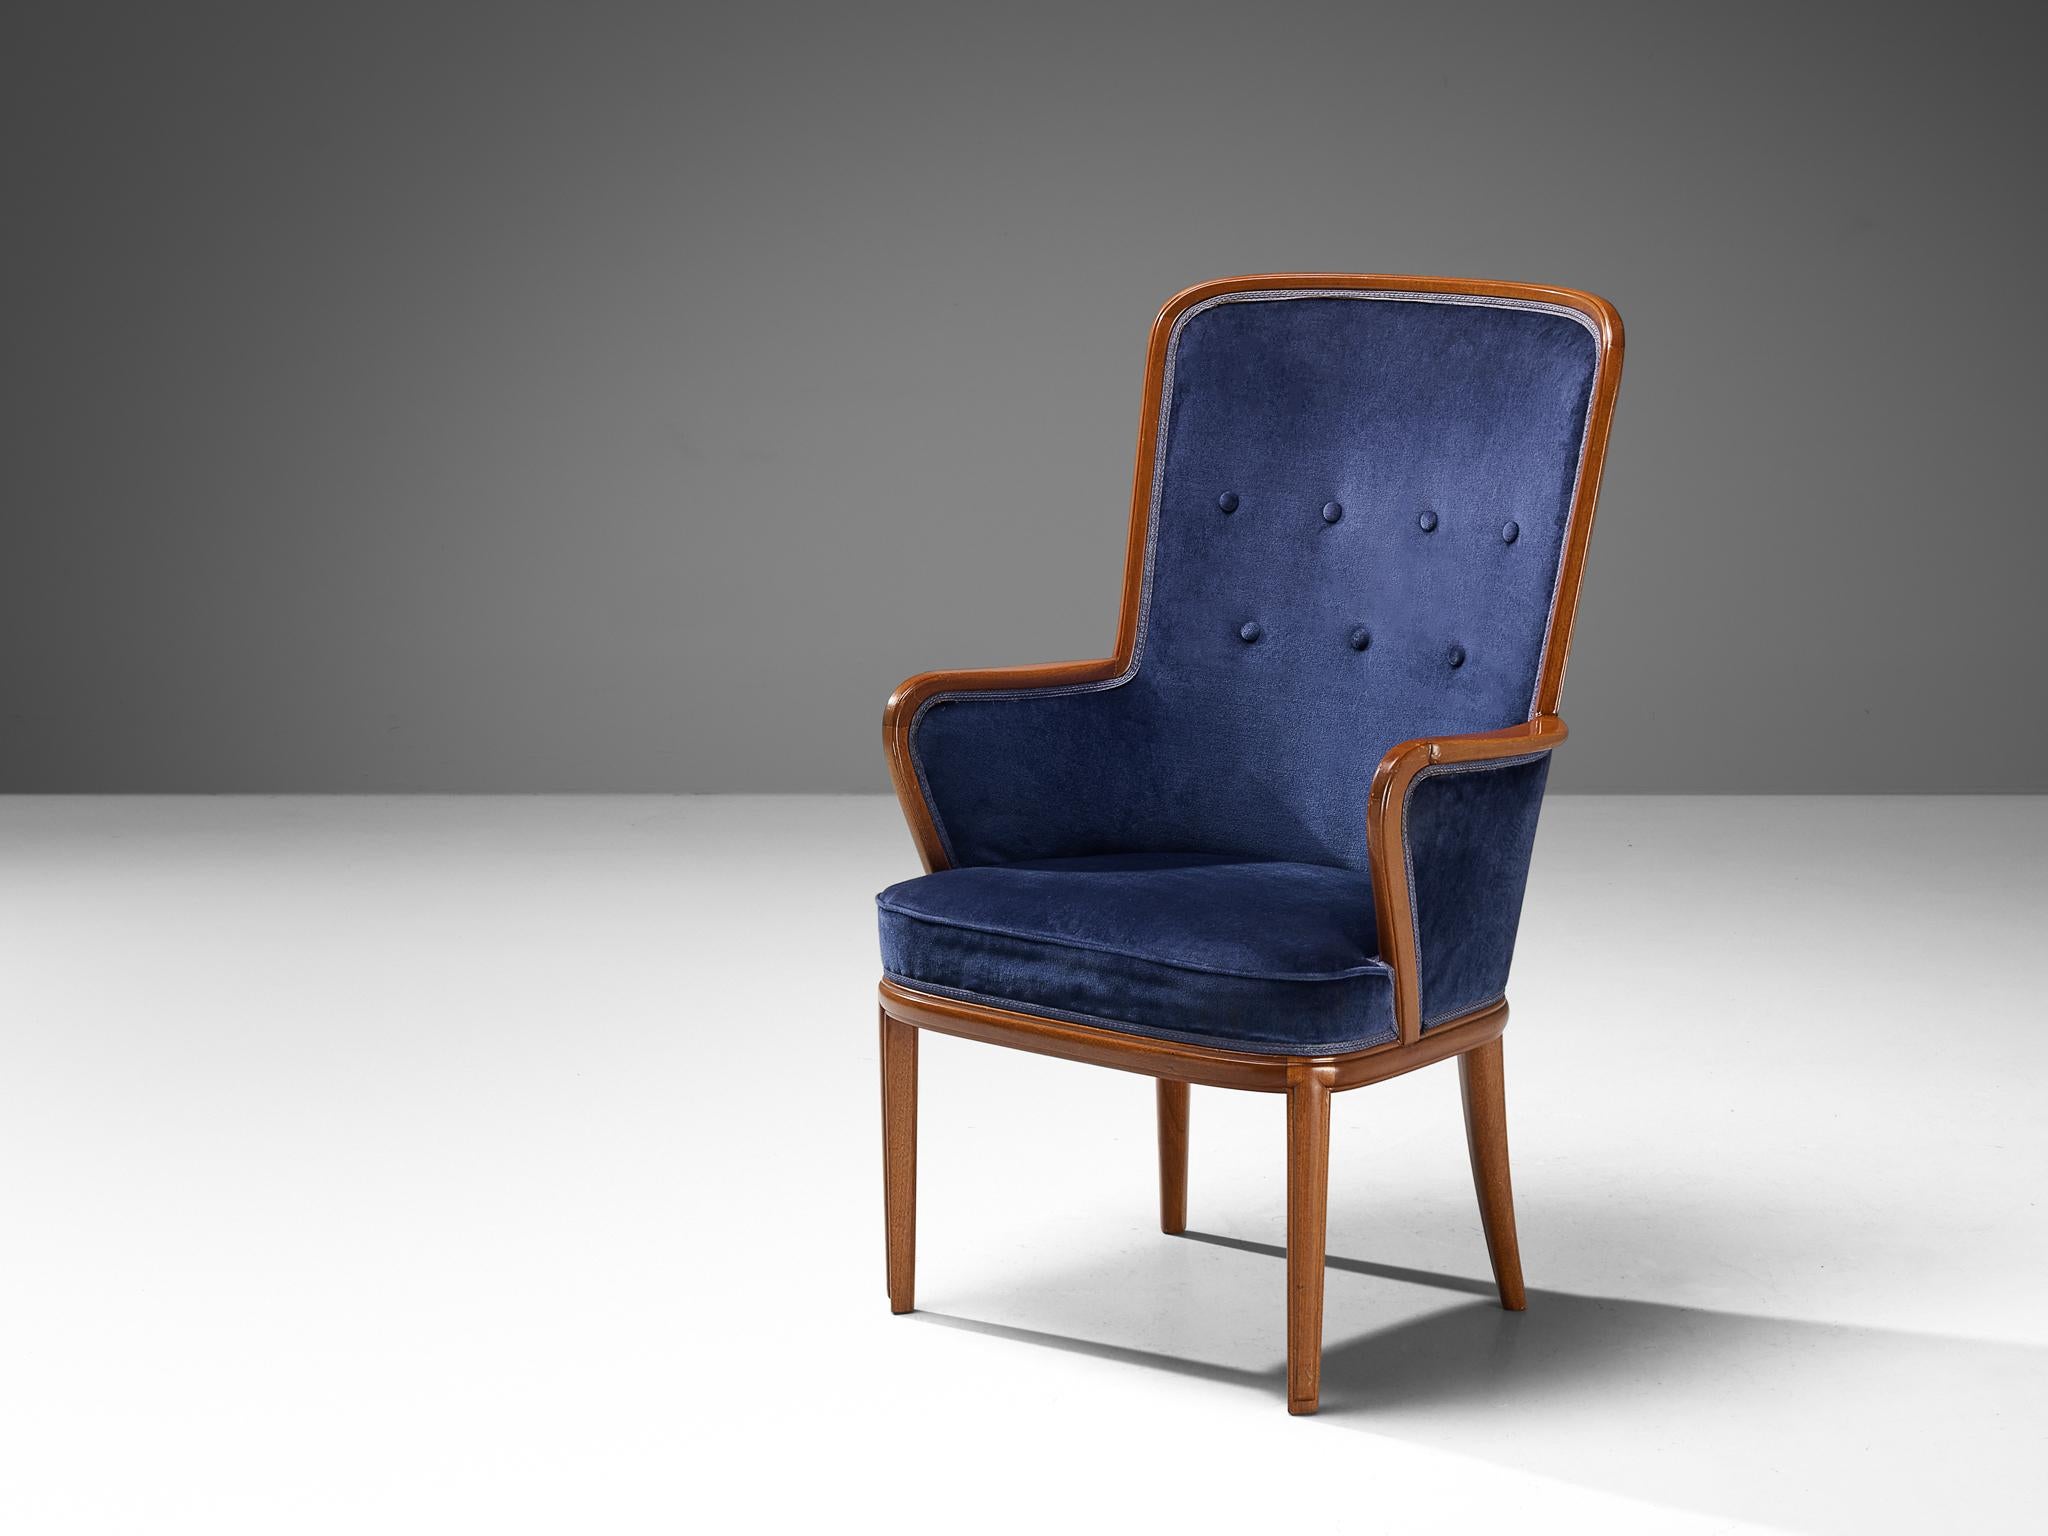 Carl Malmsten, Hochlehnstuhl, Mahagoni, Messing, Leder, Schweden, 1940er Jahre

Stuhl mit hoher Rückenlehne, entworfen vom schwedischen Designer Carl Malmsten. Dieser Stuhl ist aus einem warmen Mahagoniholz gefertigt, dessen schöne Maserung zum